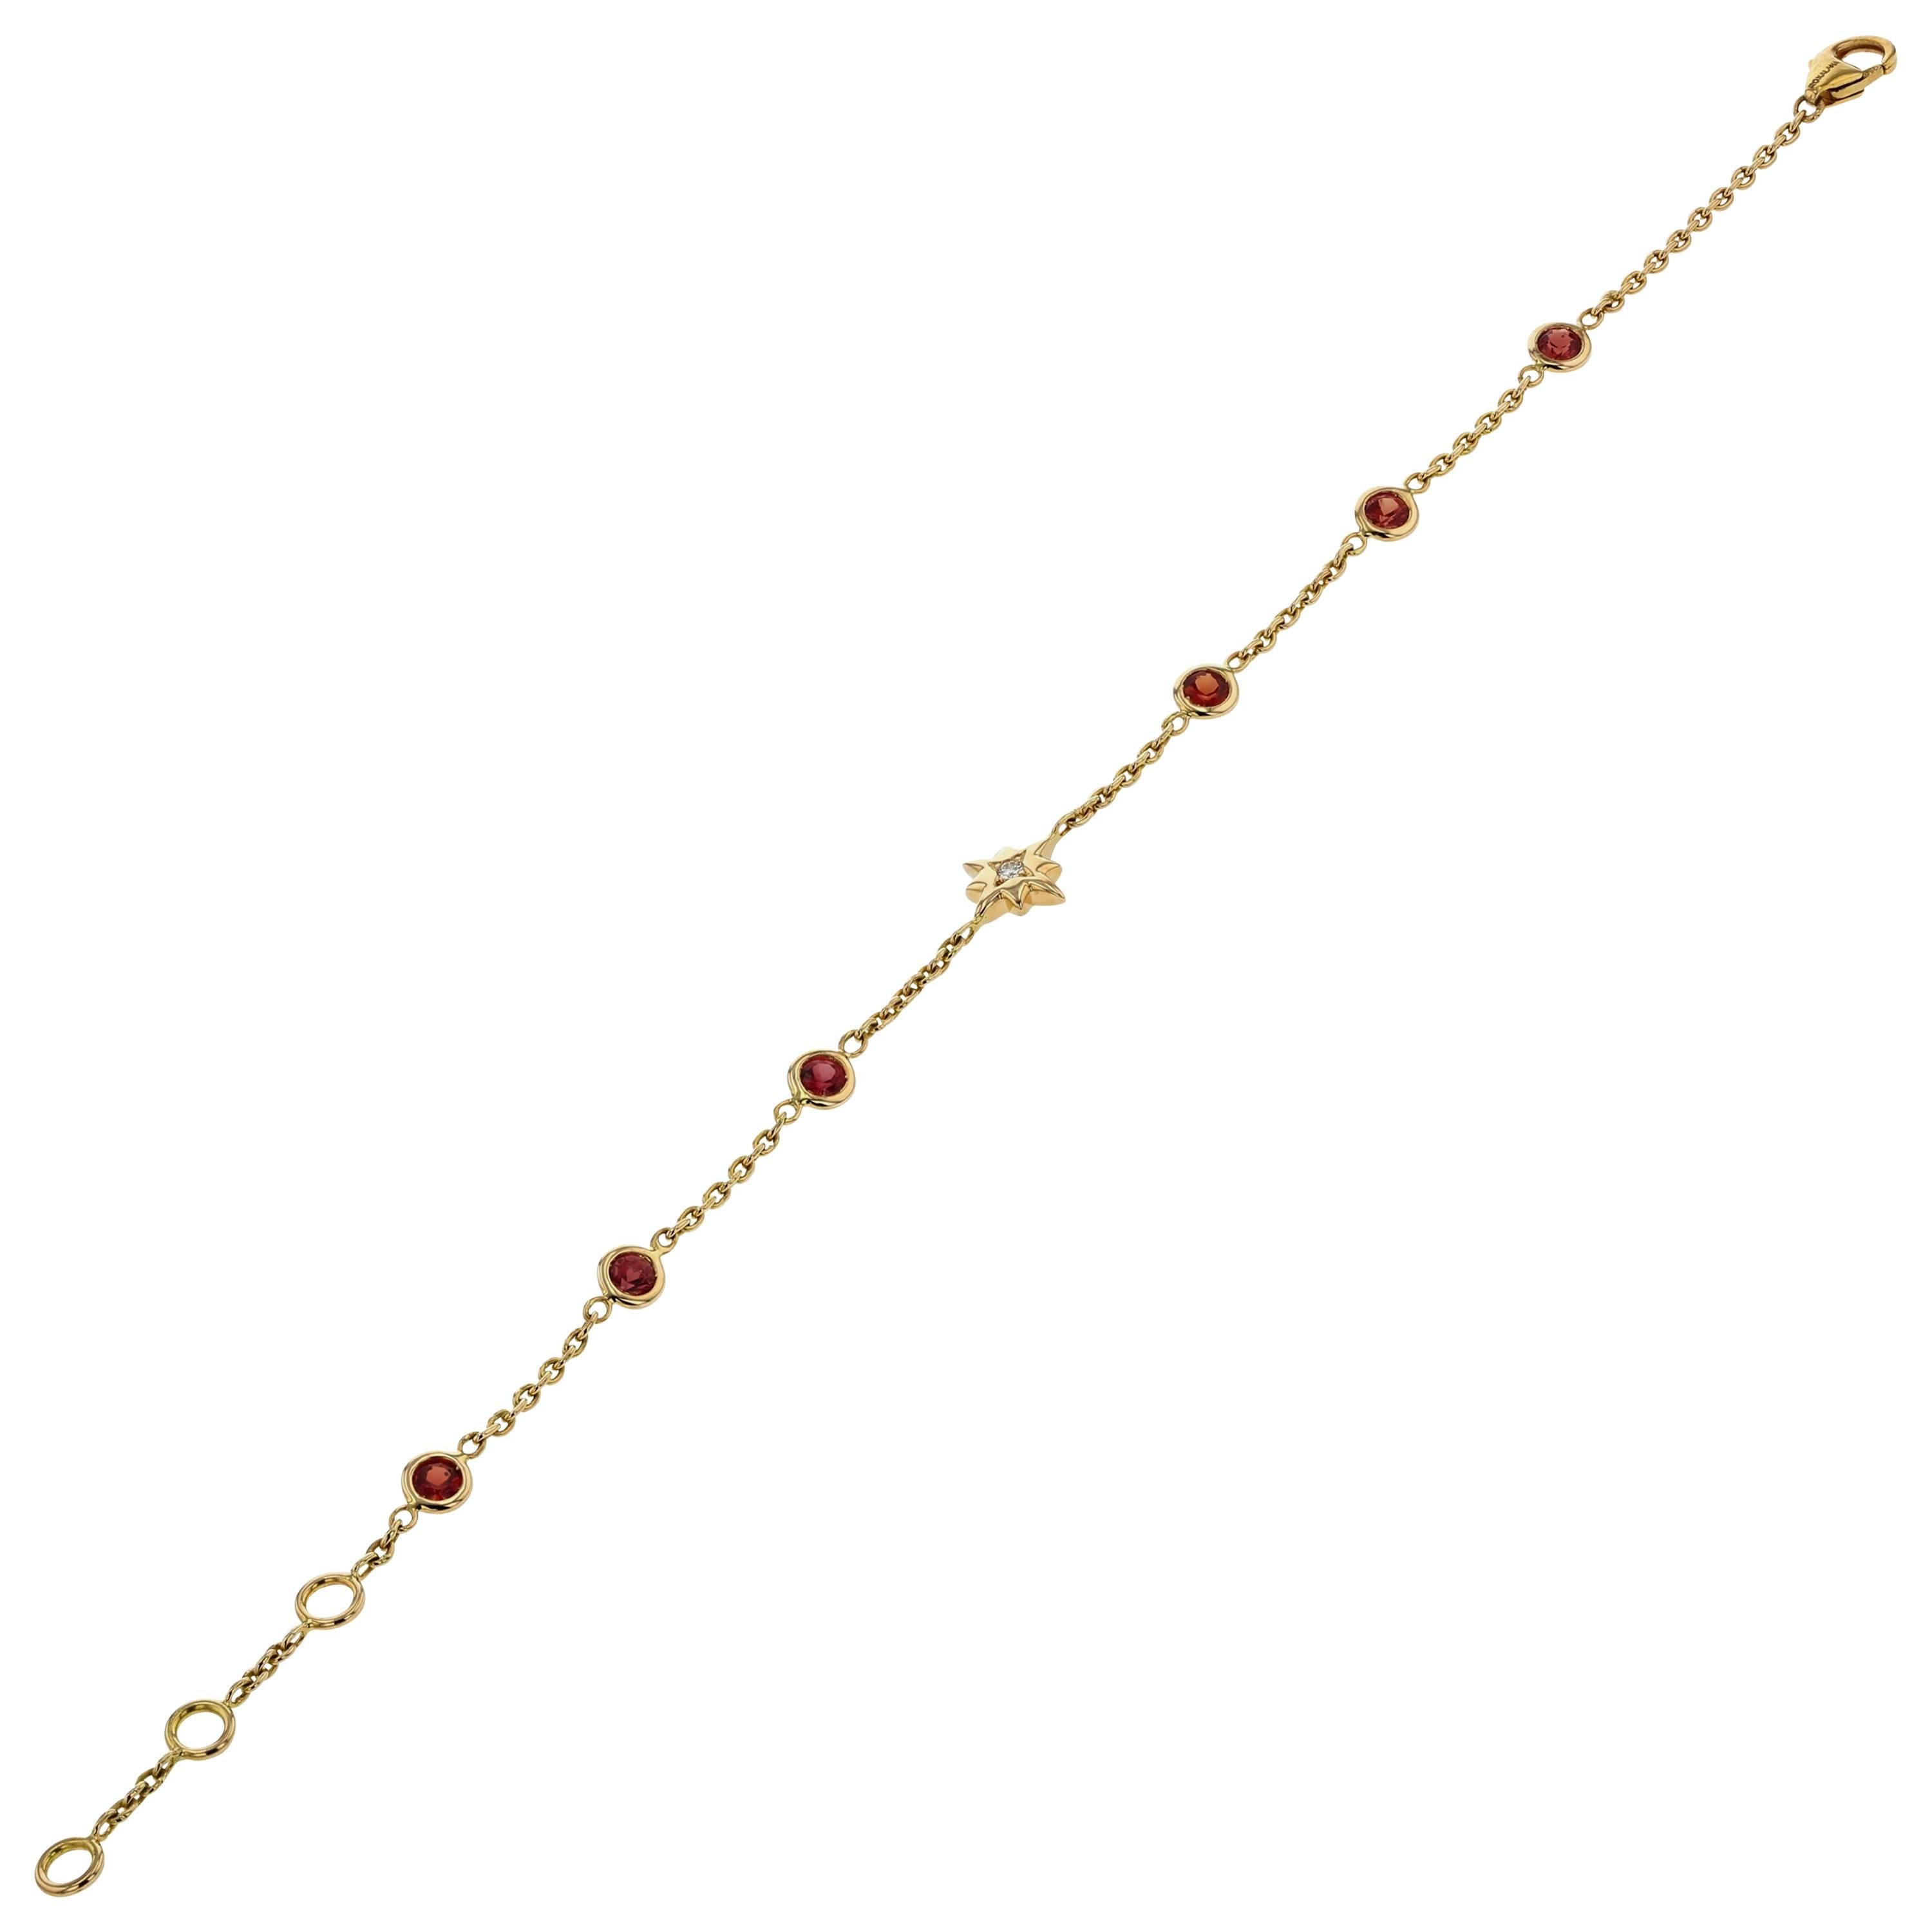 Bracelet Pink Gold 18 Karat 2.80g Rubies 0.76 Carat White Diamond 0.04 Carat For Sale